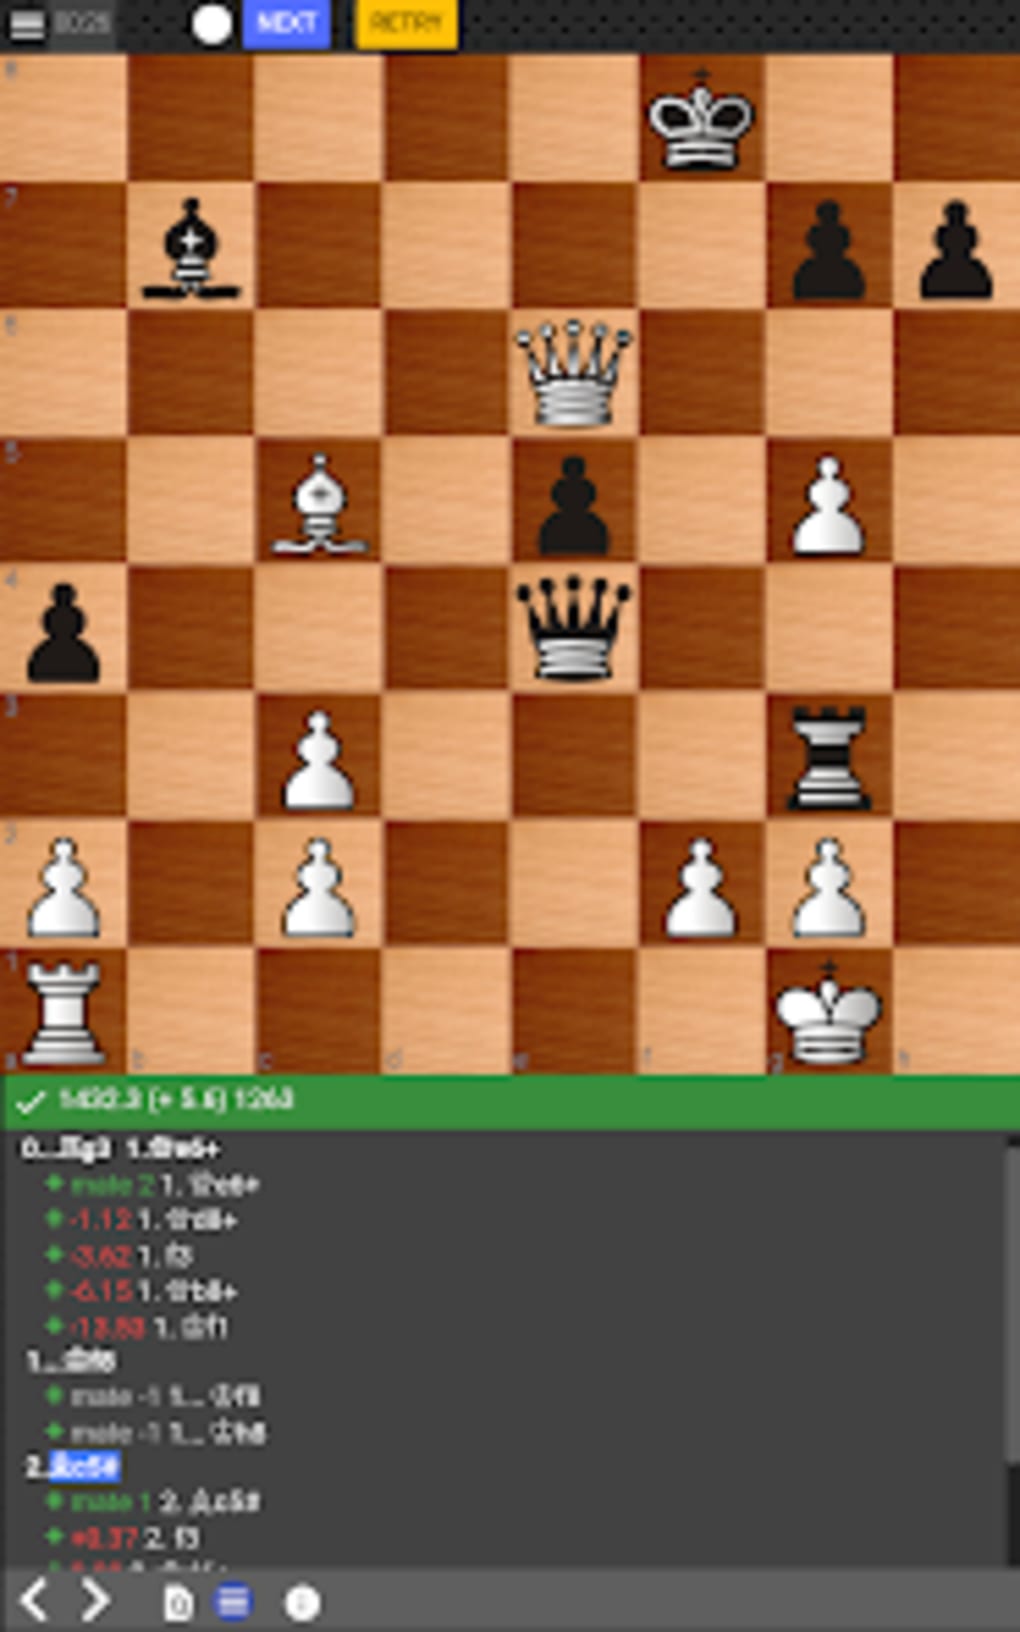 chesstempo - Club de ajedrez 